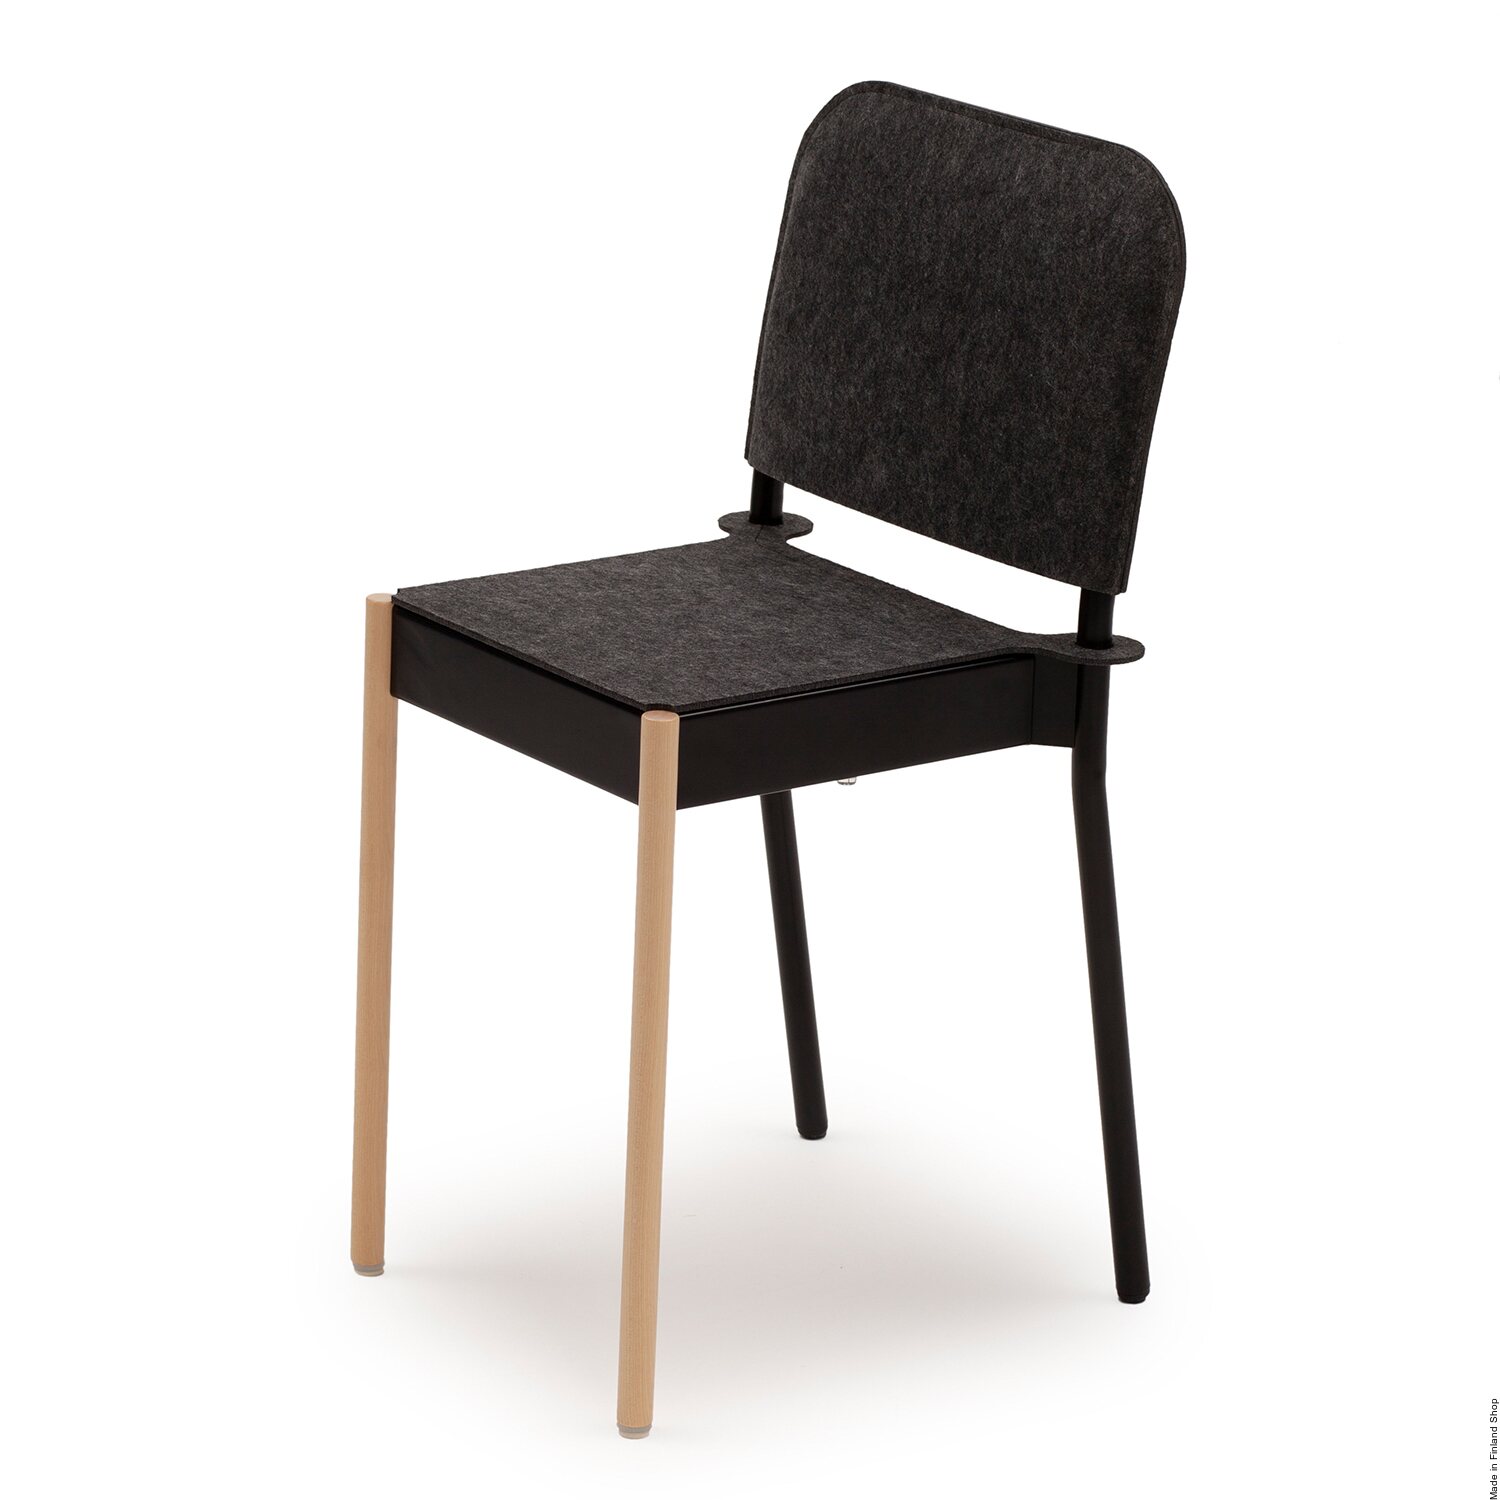 Vivero Chaise La Table avec pieds avant en bois et assise en feutre, Chaises de salle à manger